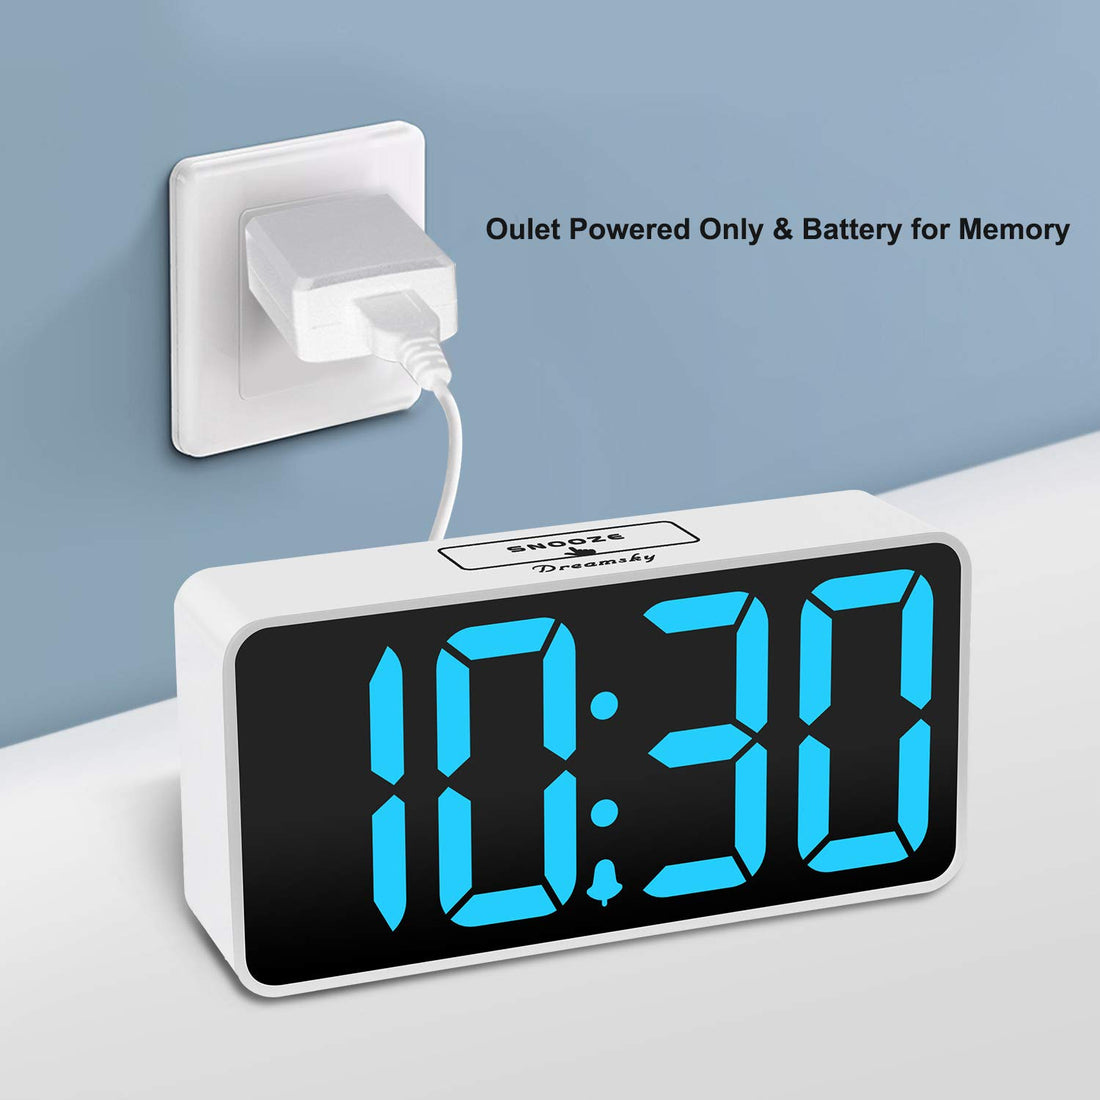 DreamSky Compact Digital Alarm Clock with USB Port for Charging, Adjustable Brightness Dimmer, Blue Bold Digit Display, Adjustable Alarm Volume, 12/24Hr, Snooze, Bedroom Desk Alarm Clock